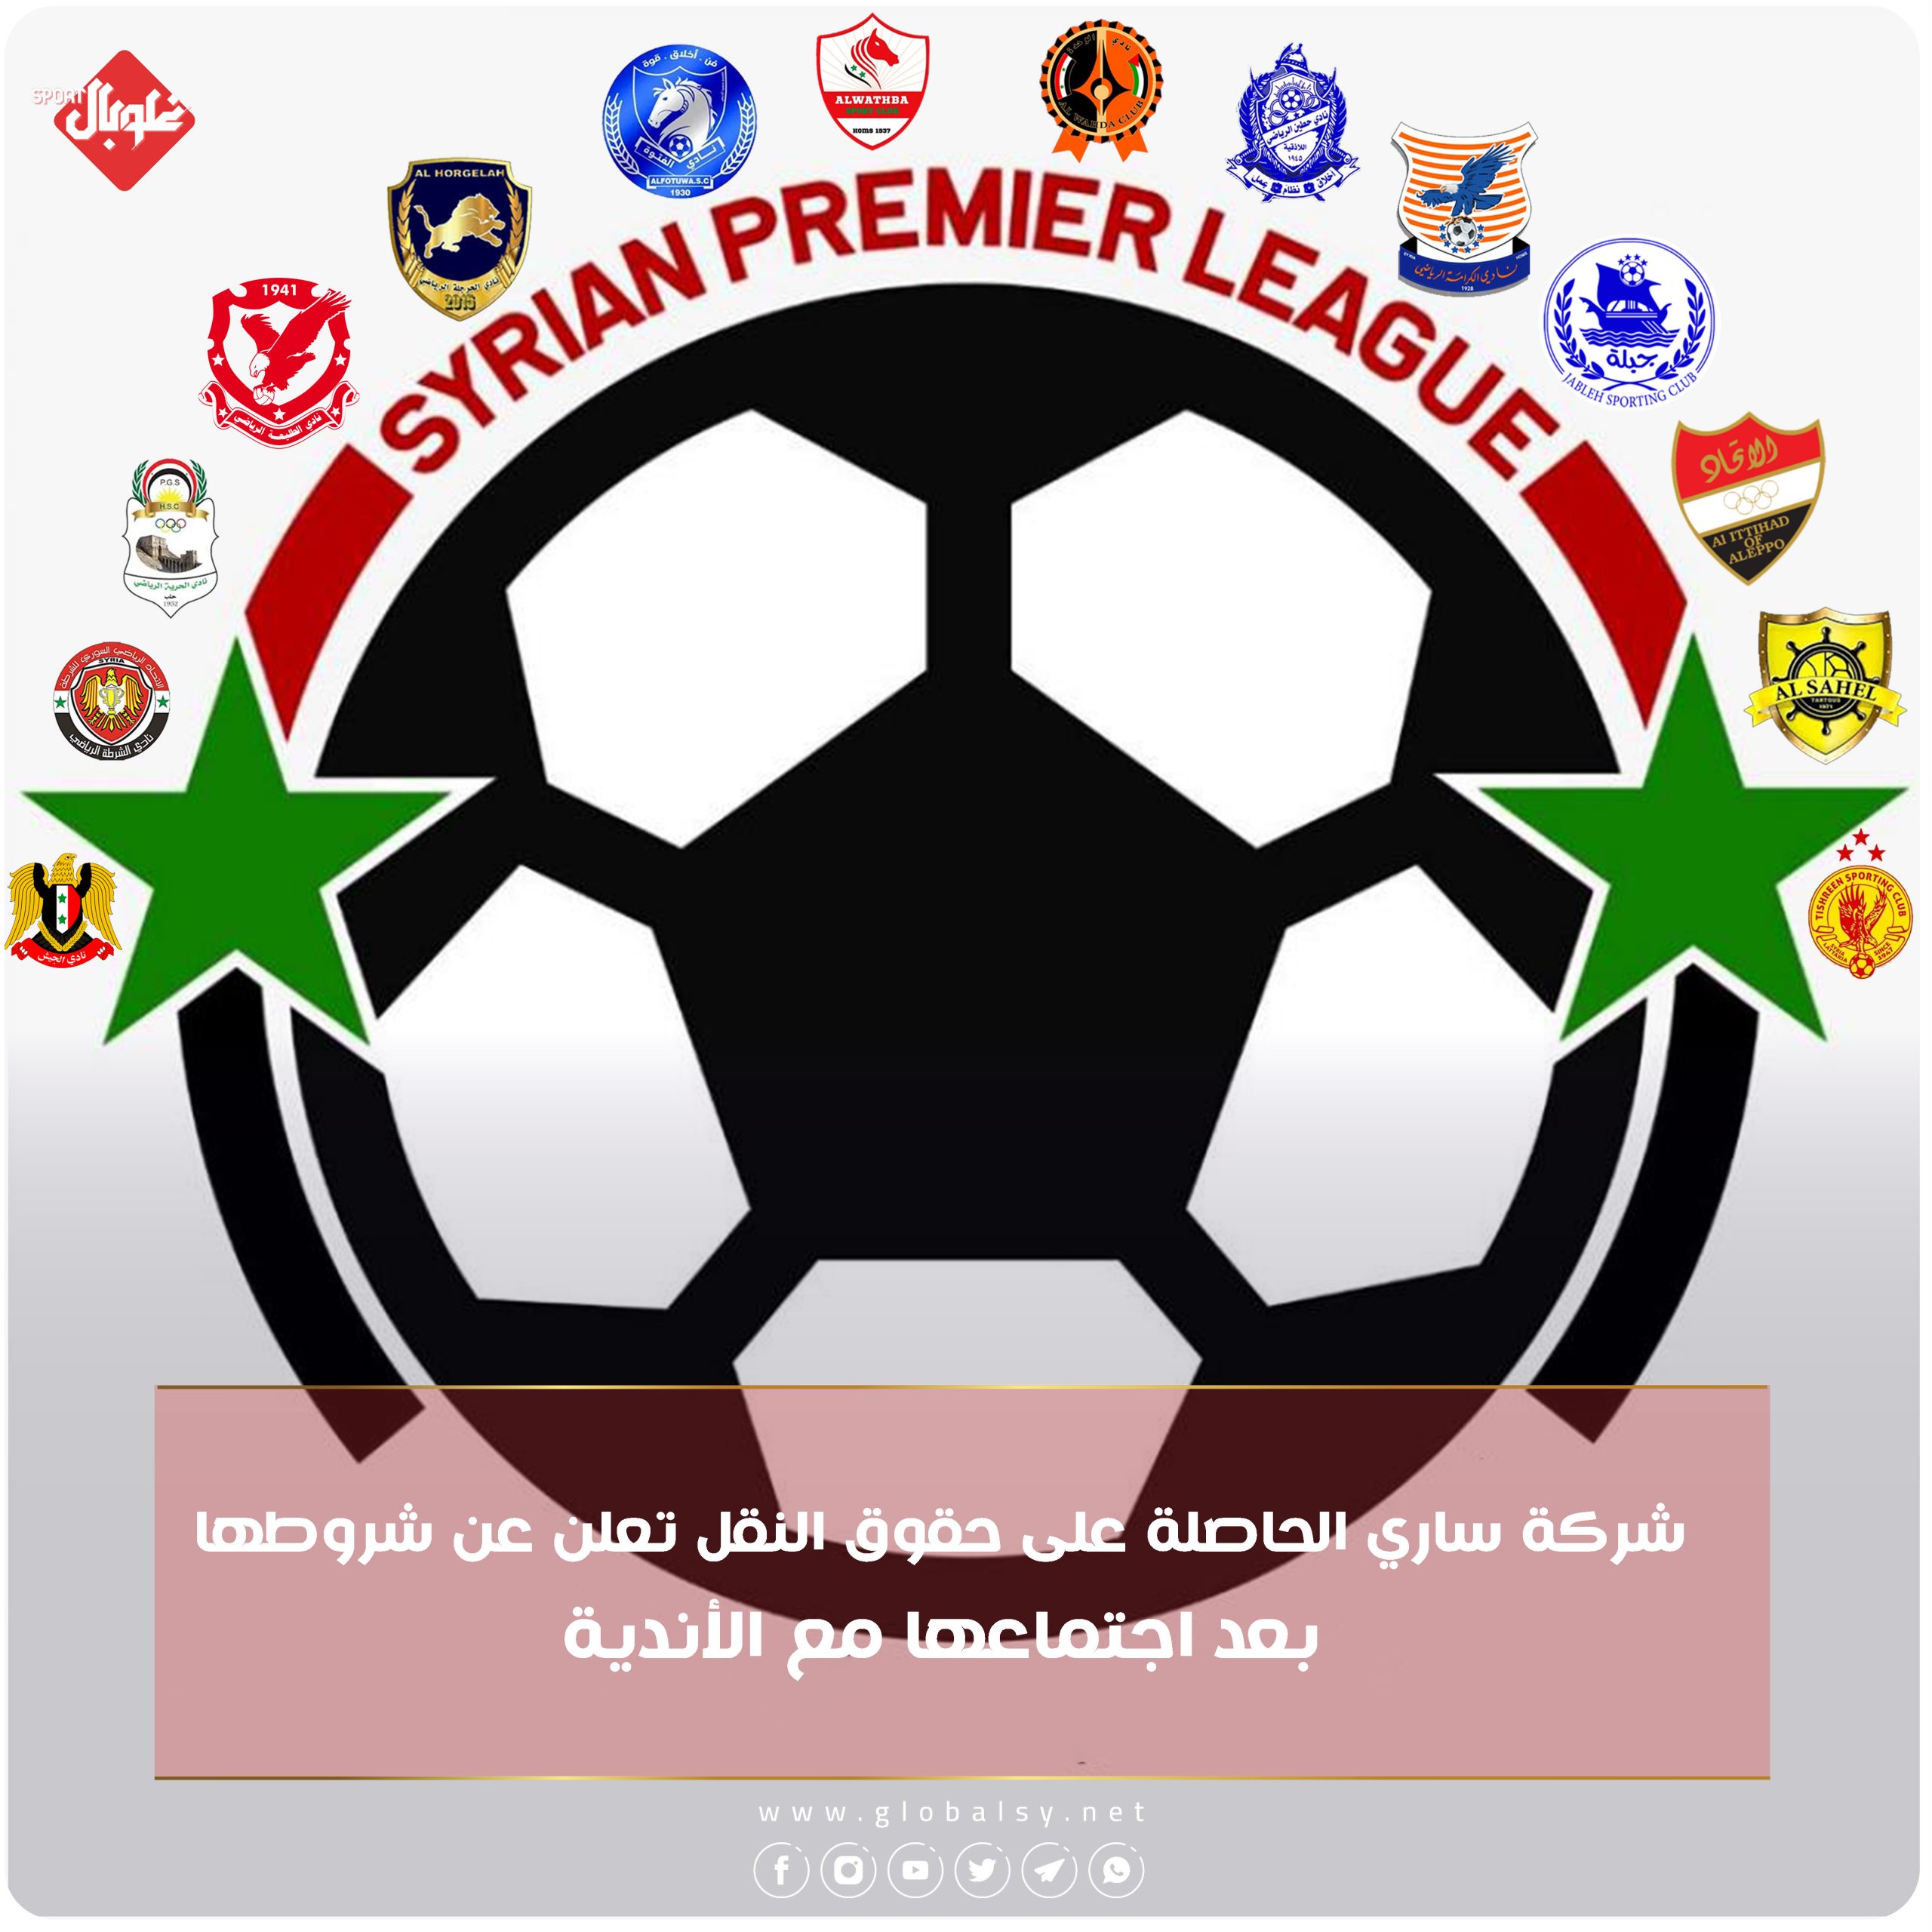 استديوهات تحليلة وكاميرات بدقة عالية.... شروط بث الدوري السوري لكرة القدم